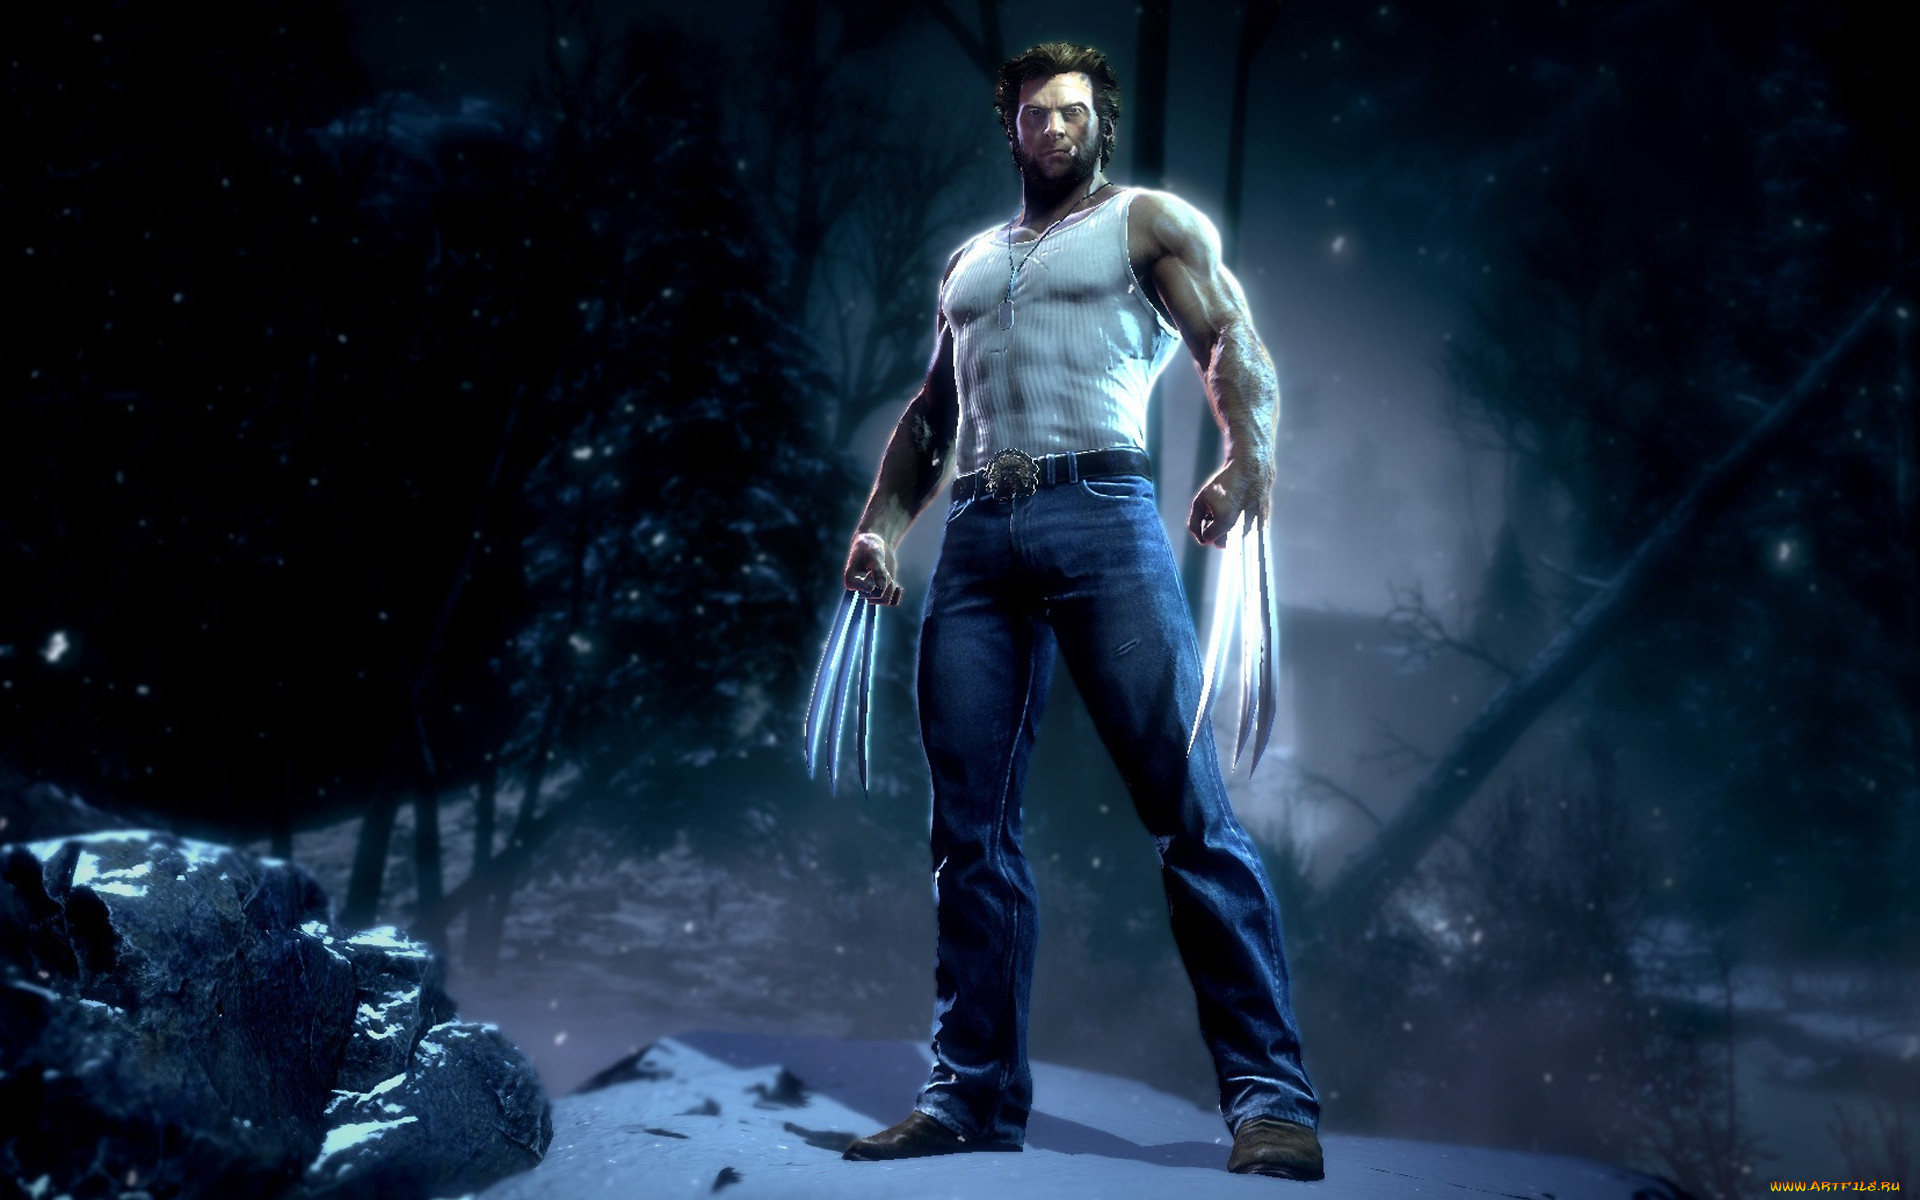 Ло мен. X-men Origins: Wolverine (игра). X men Wolverine игра. X men Origins Wolverine 2009 игра. Wolverine Origins игра.